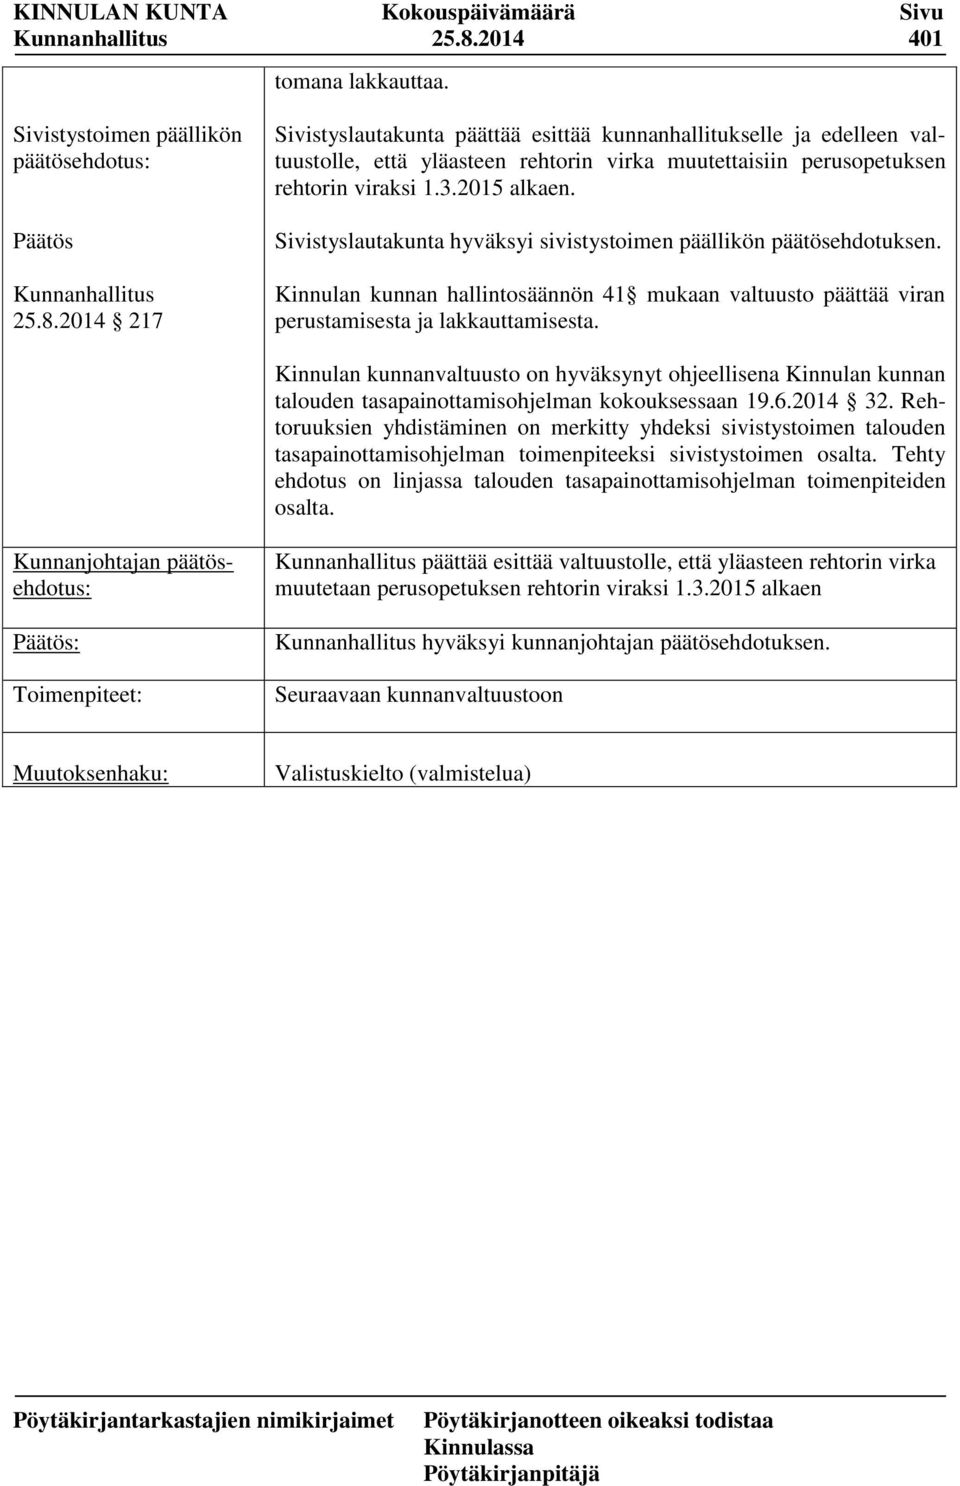 Kinnulan kunnanvaltuusto on hyväksynyt ohjeellisena Kinnulan kunnan talouden tasapainottamisohjelman kokouksessaan 19.6.2014 32.